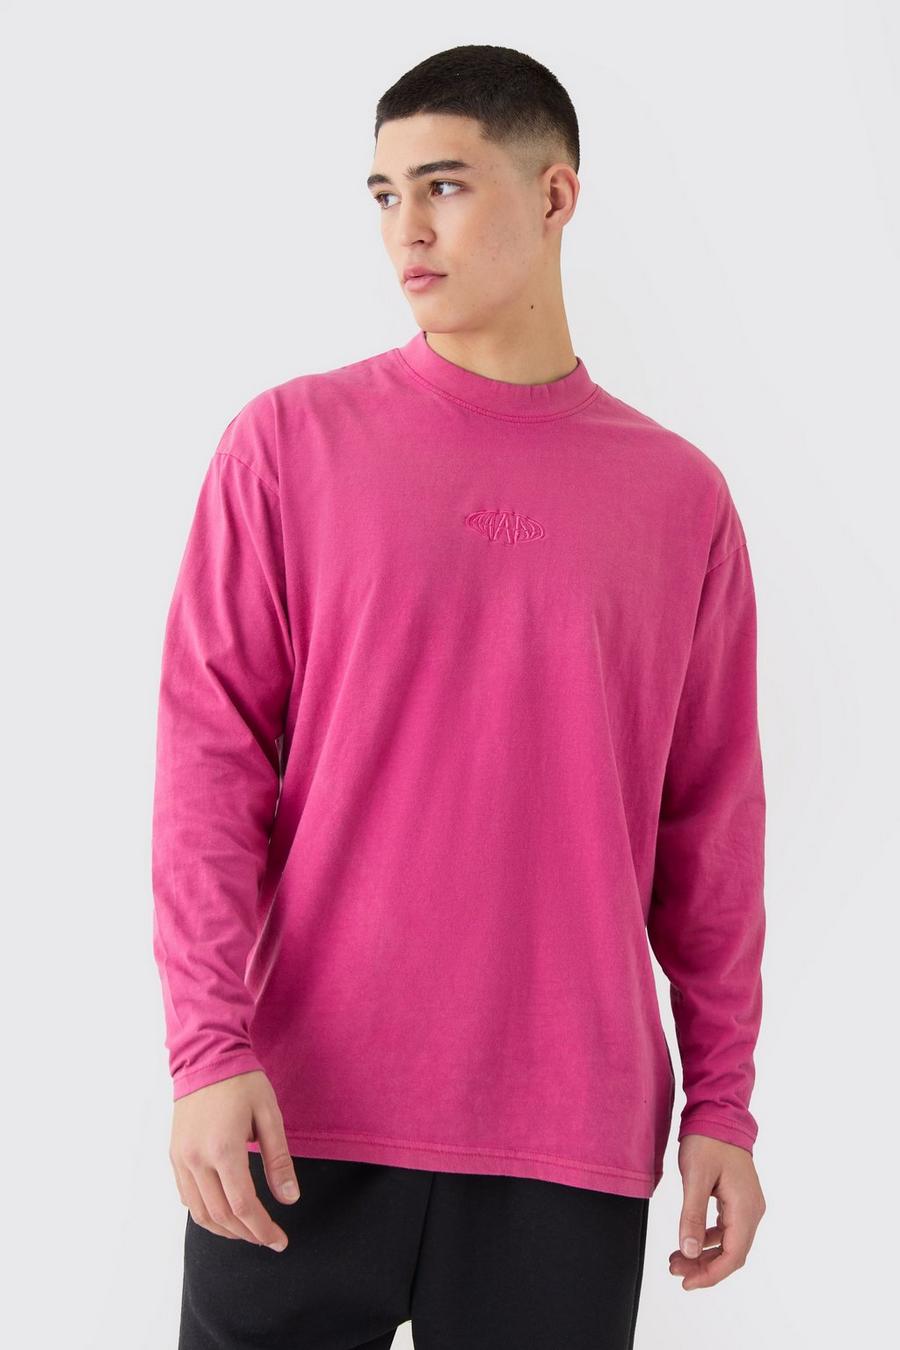 T-shirt oversize Man slavata a maniche lunghe con girocollo esteso, Pink